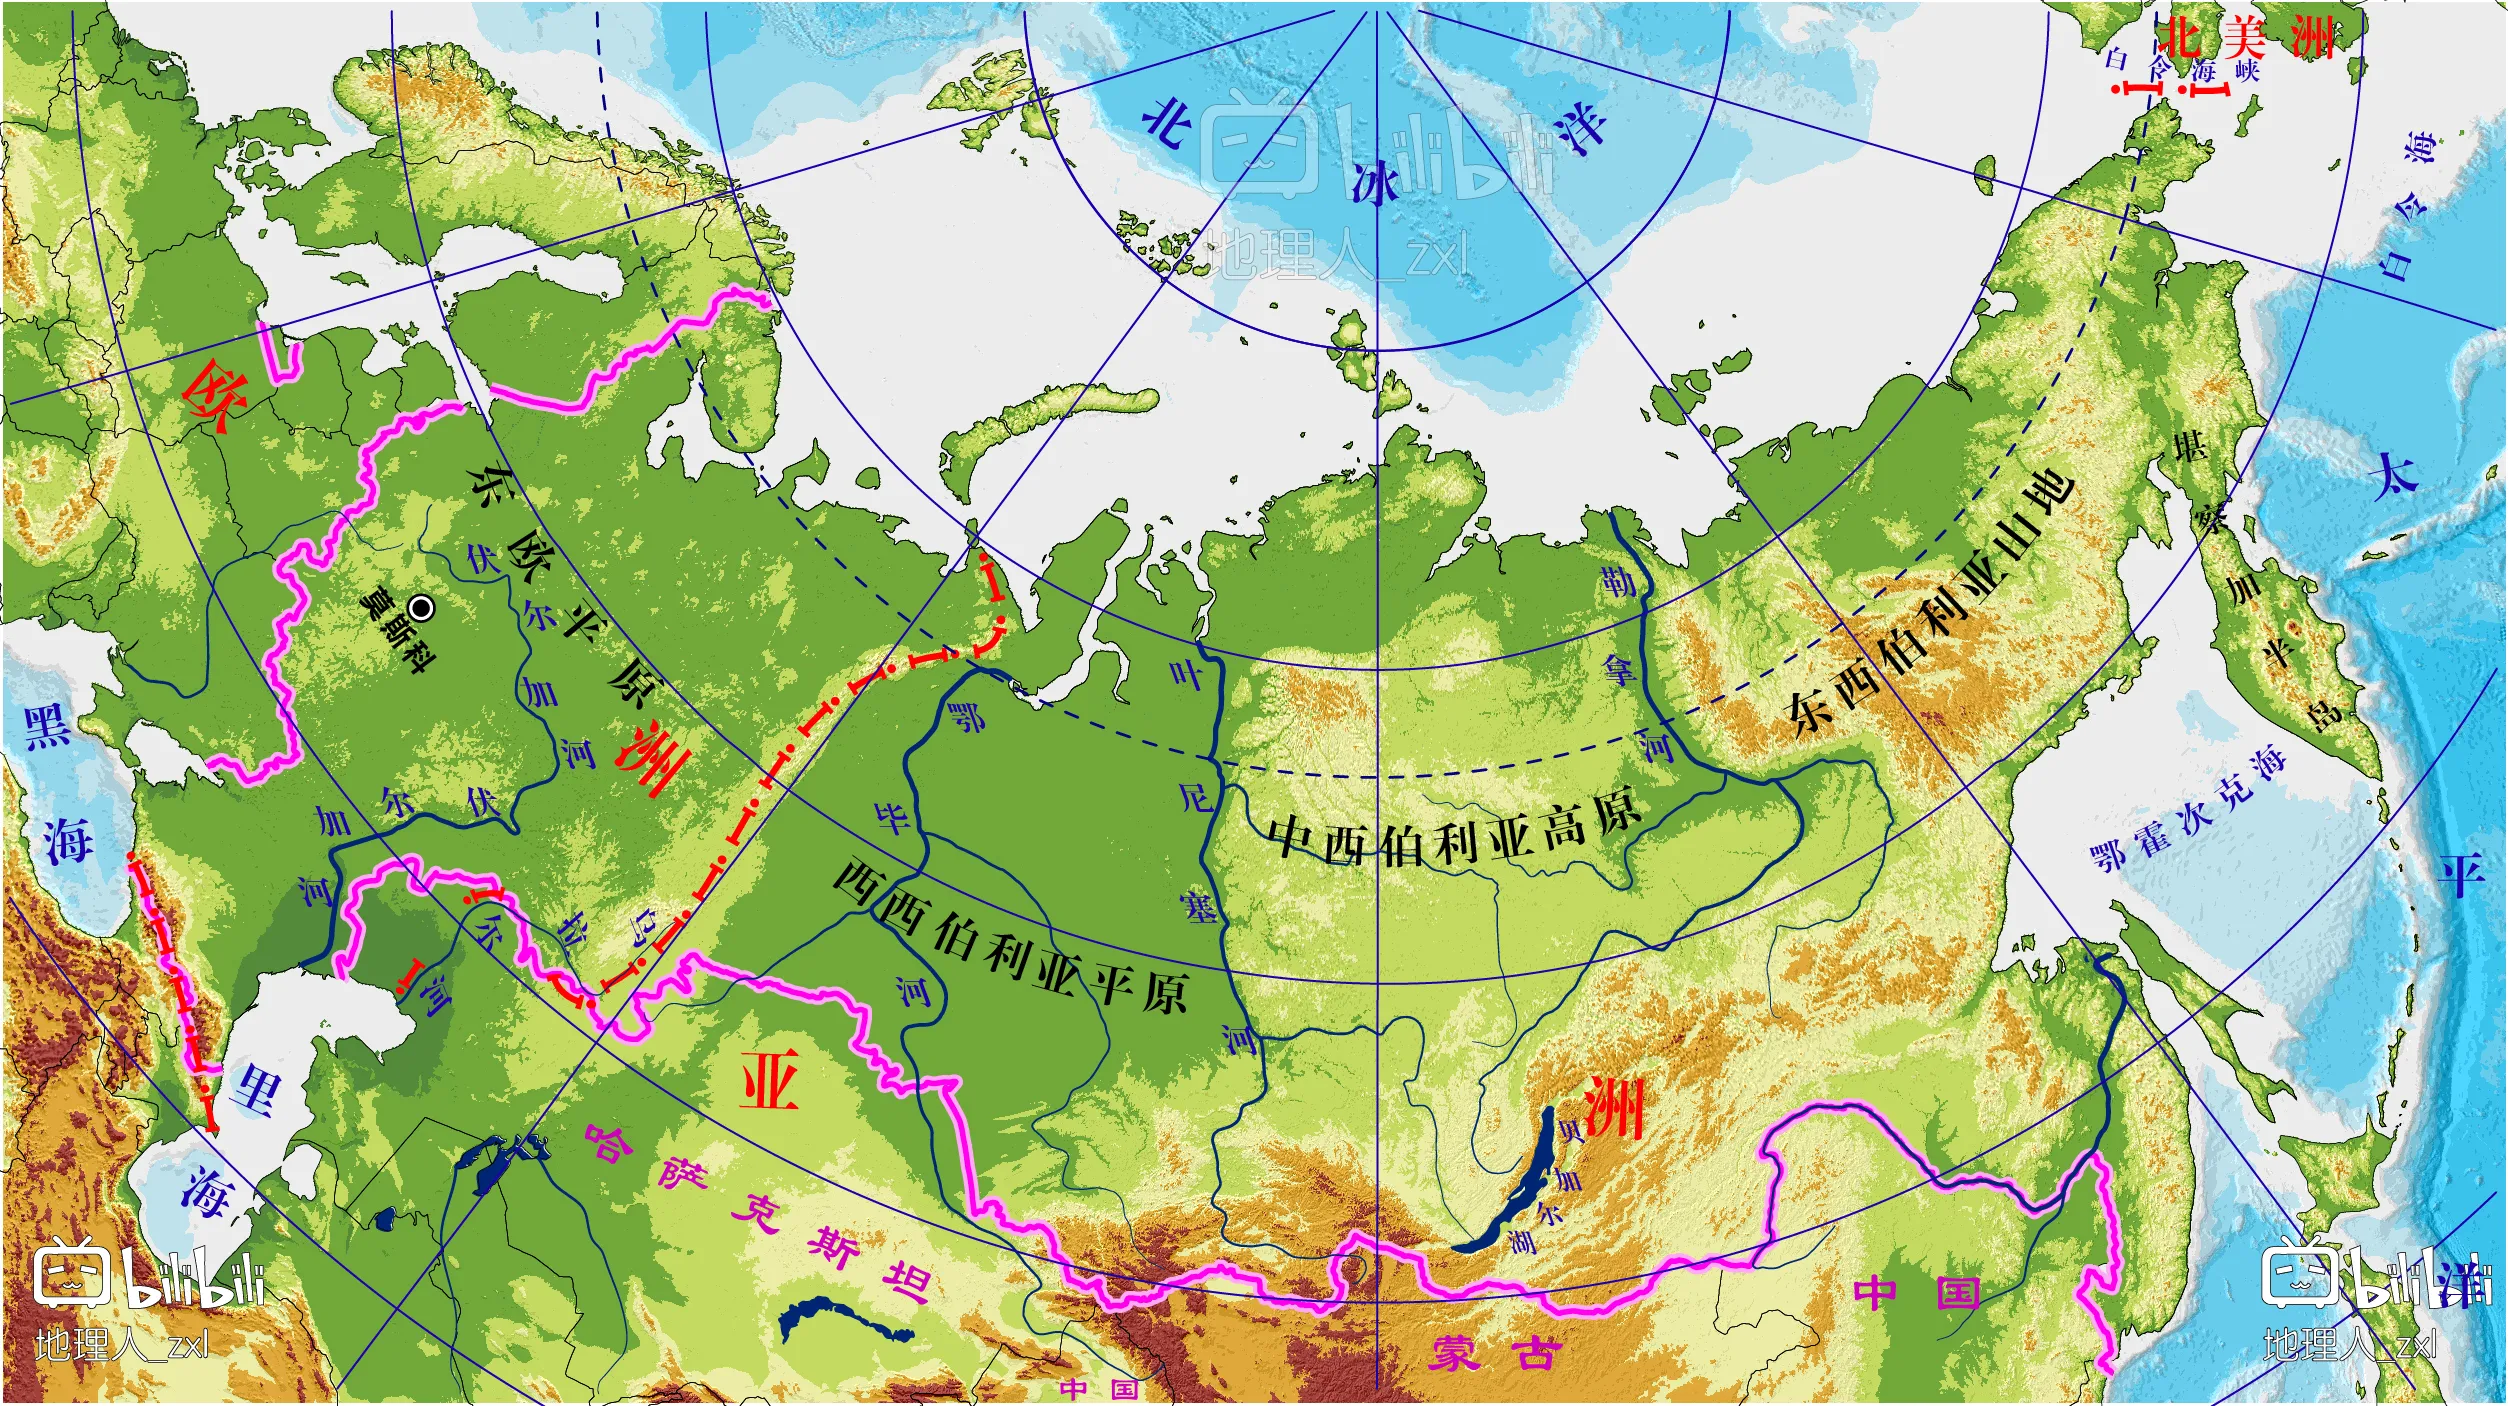 鄂毕河全长5410公里,是俄罗斯第二大河,流域面积297